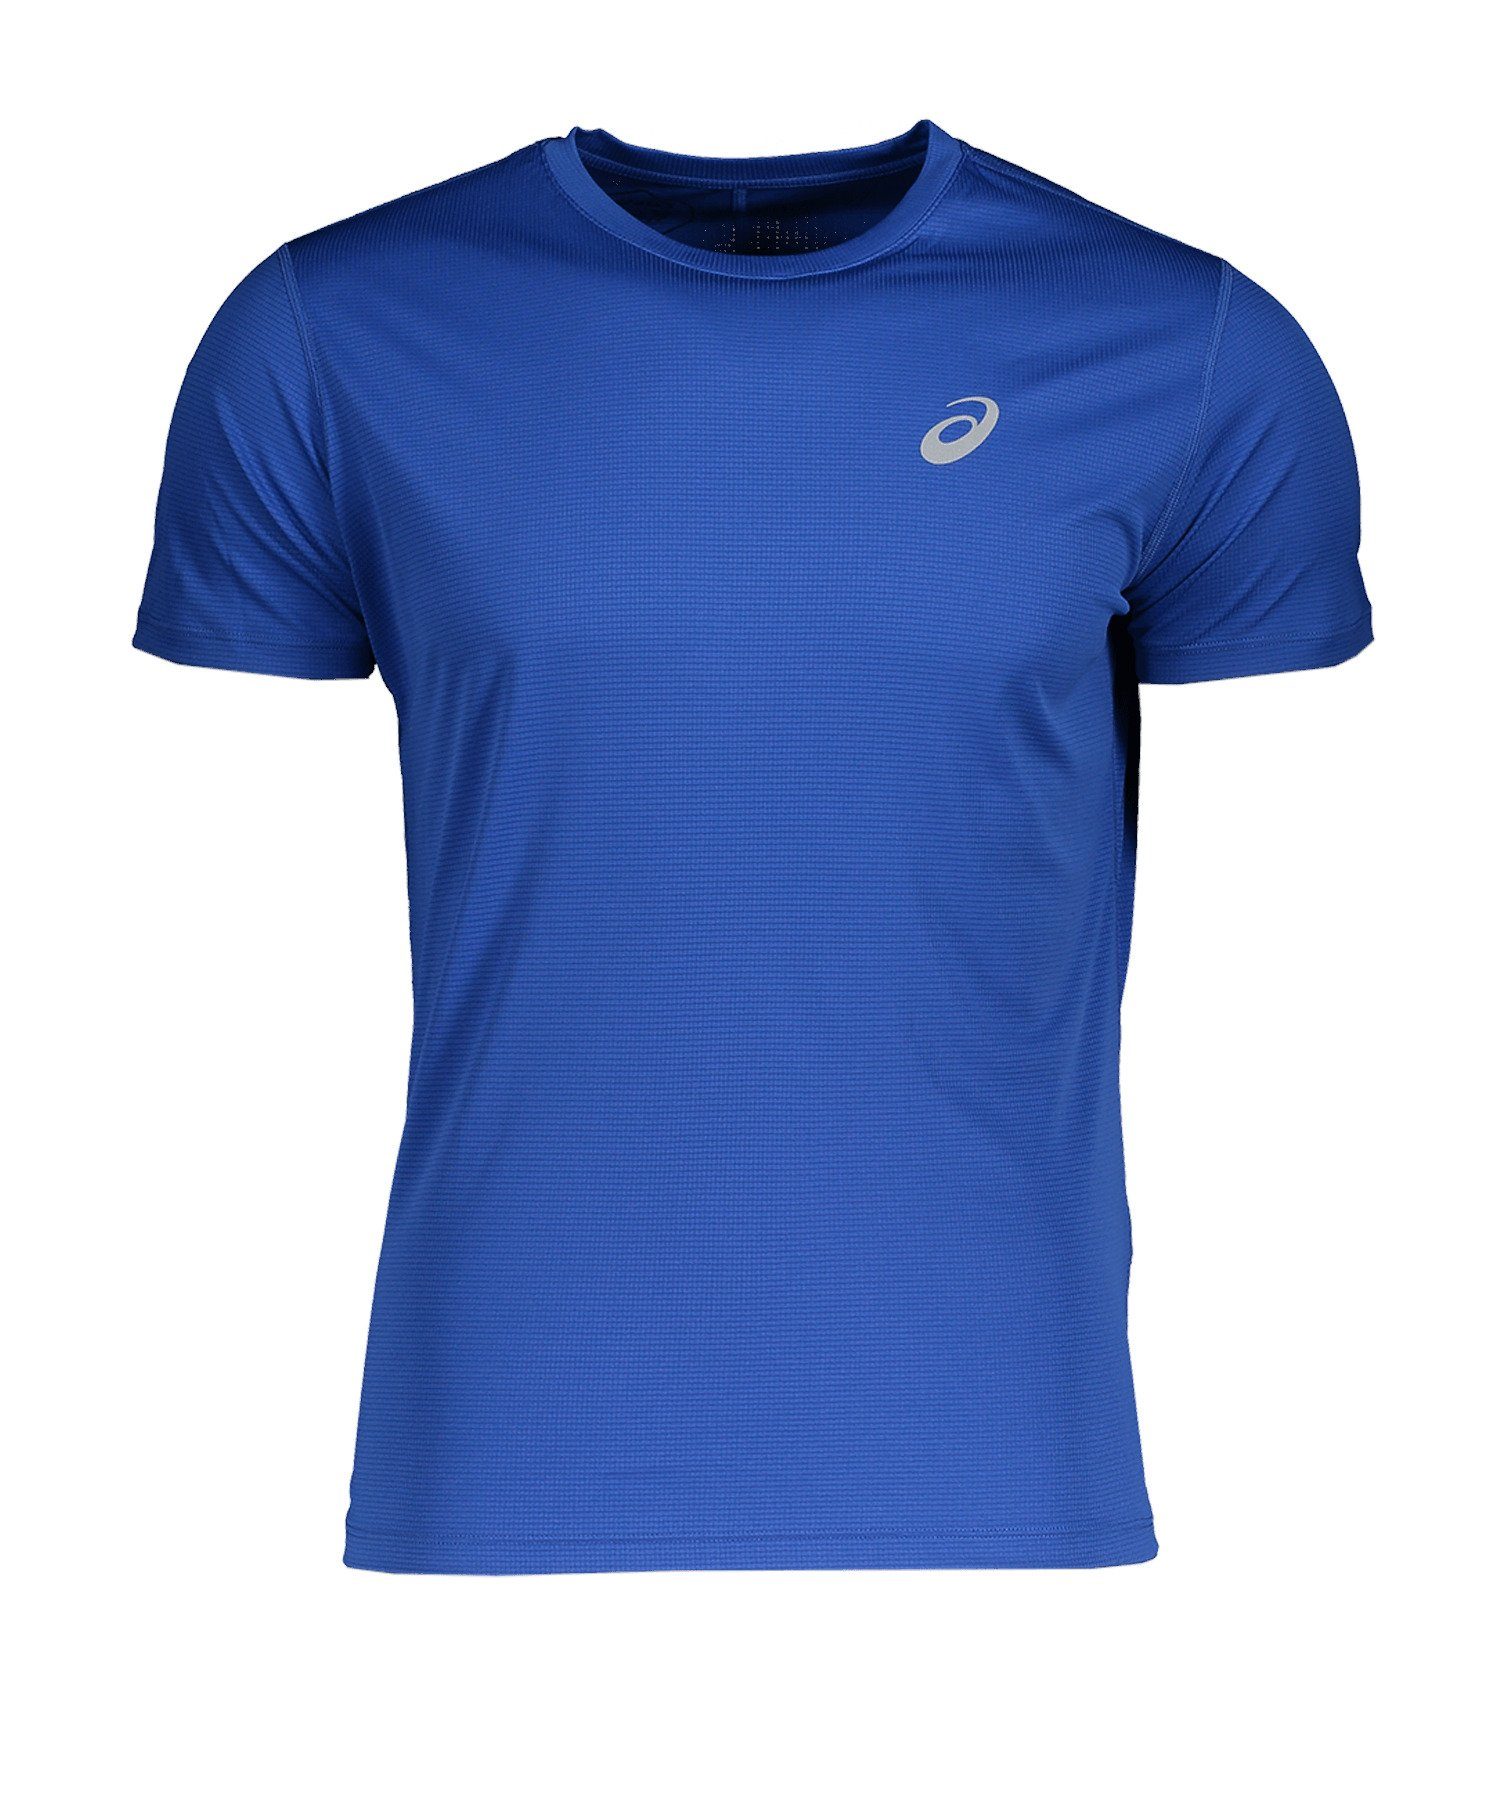 Asics Laufshirt default Running T-Shirt Silver blau